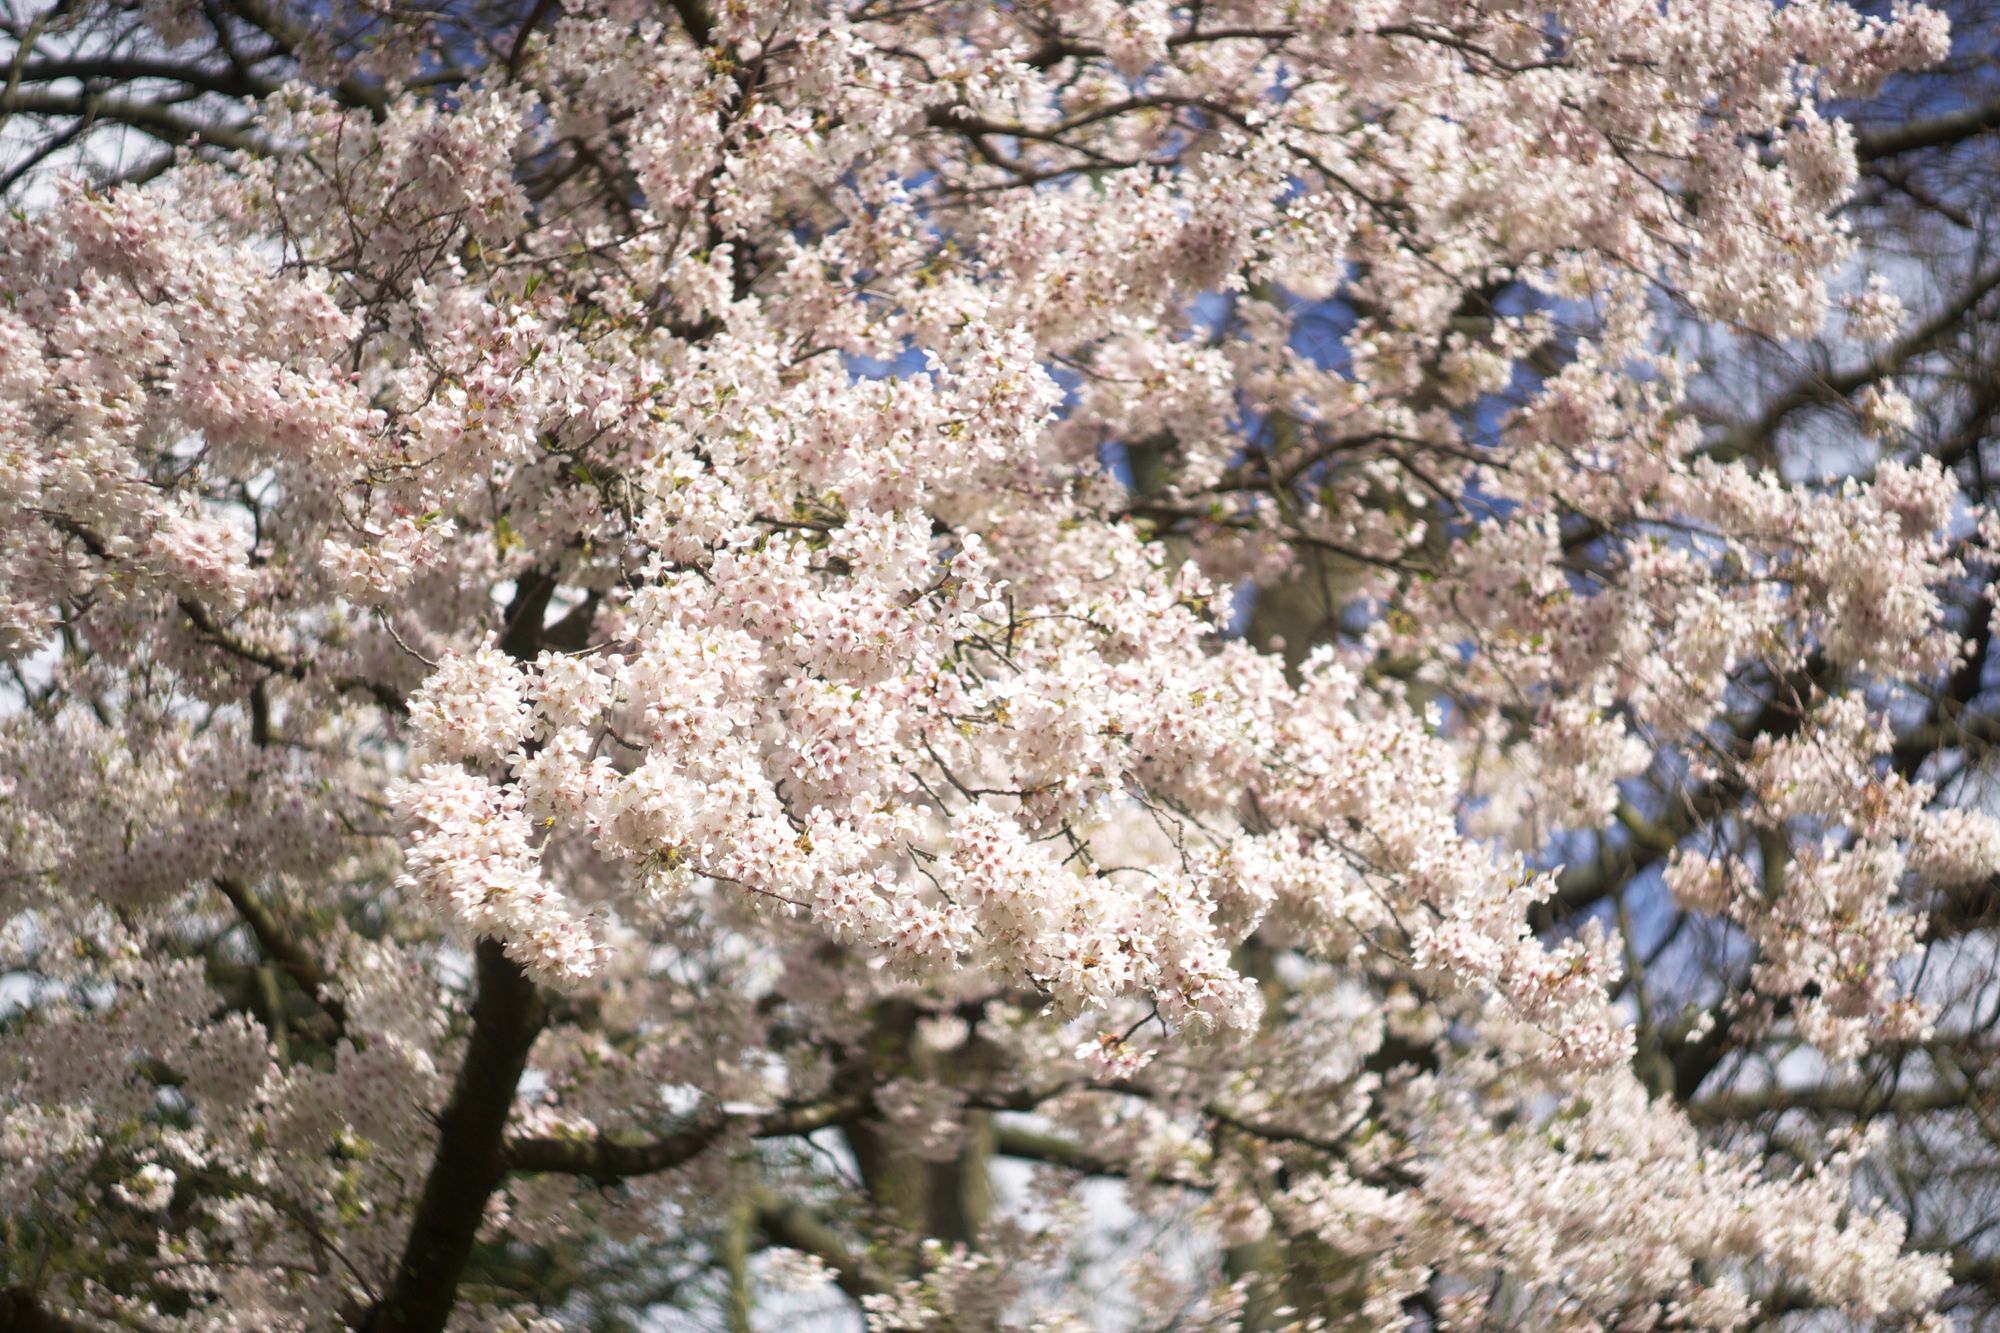 2023 spring blossom retrospective